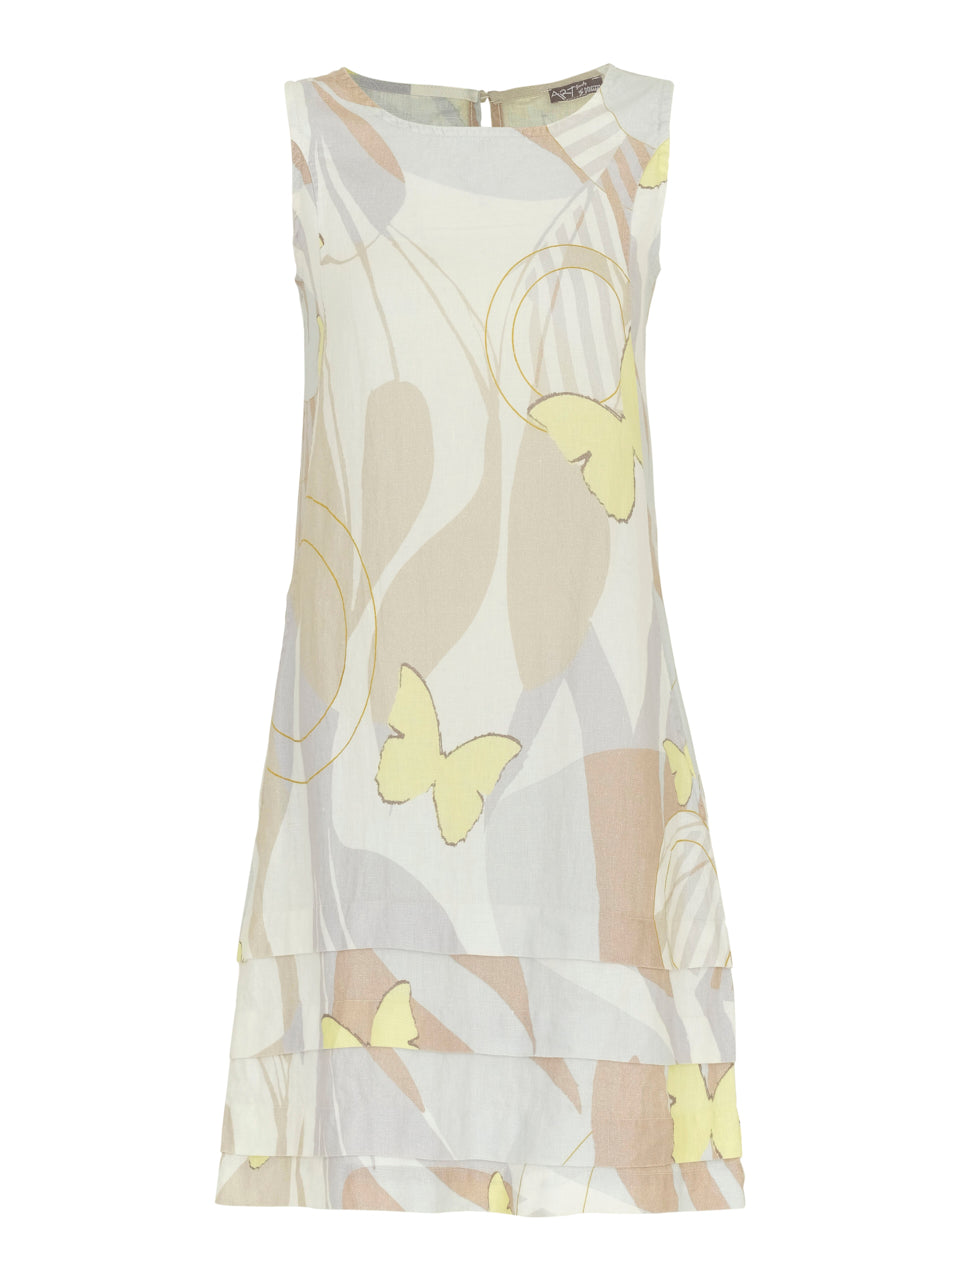 Simply Art by Dolcezza - Linen dress - Yellow Butterflies